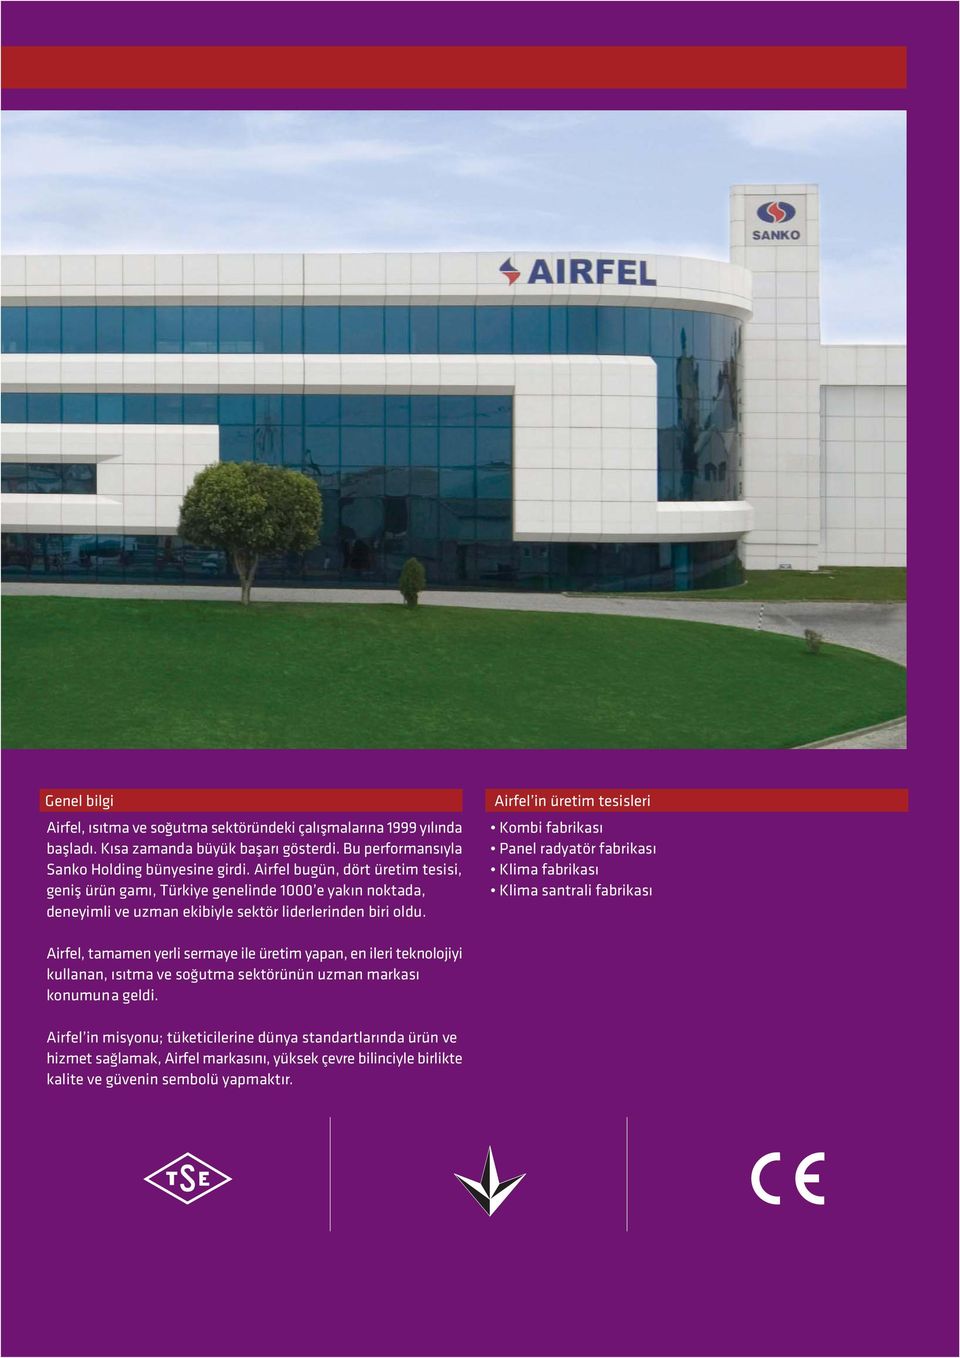 Airfel in üretim tesisleri Kombi fabrikas Panel radyatör fabrikas Klima fabrikas Klima santrali fabrikas Airfel, tamamen yerli sermaye ile üretim yapan, en ileri teknolojiyi